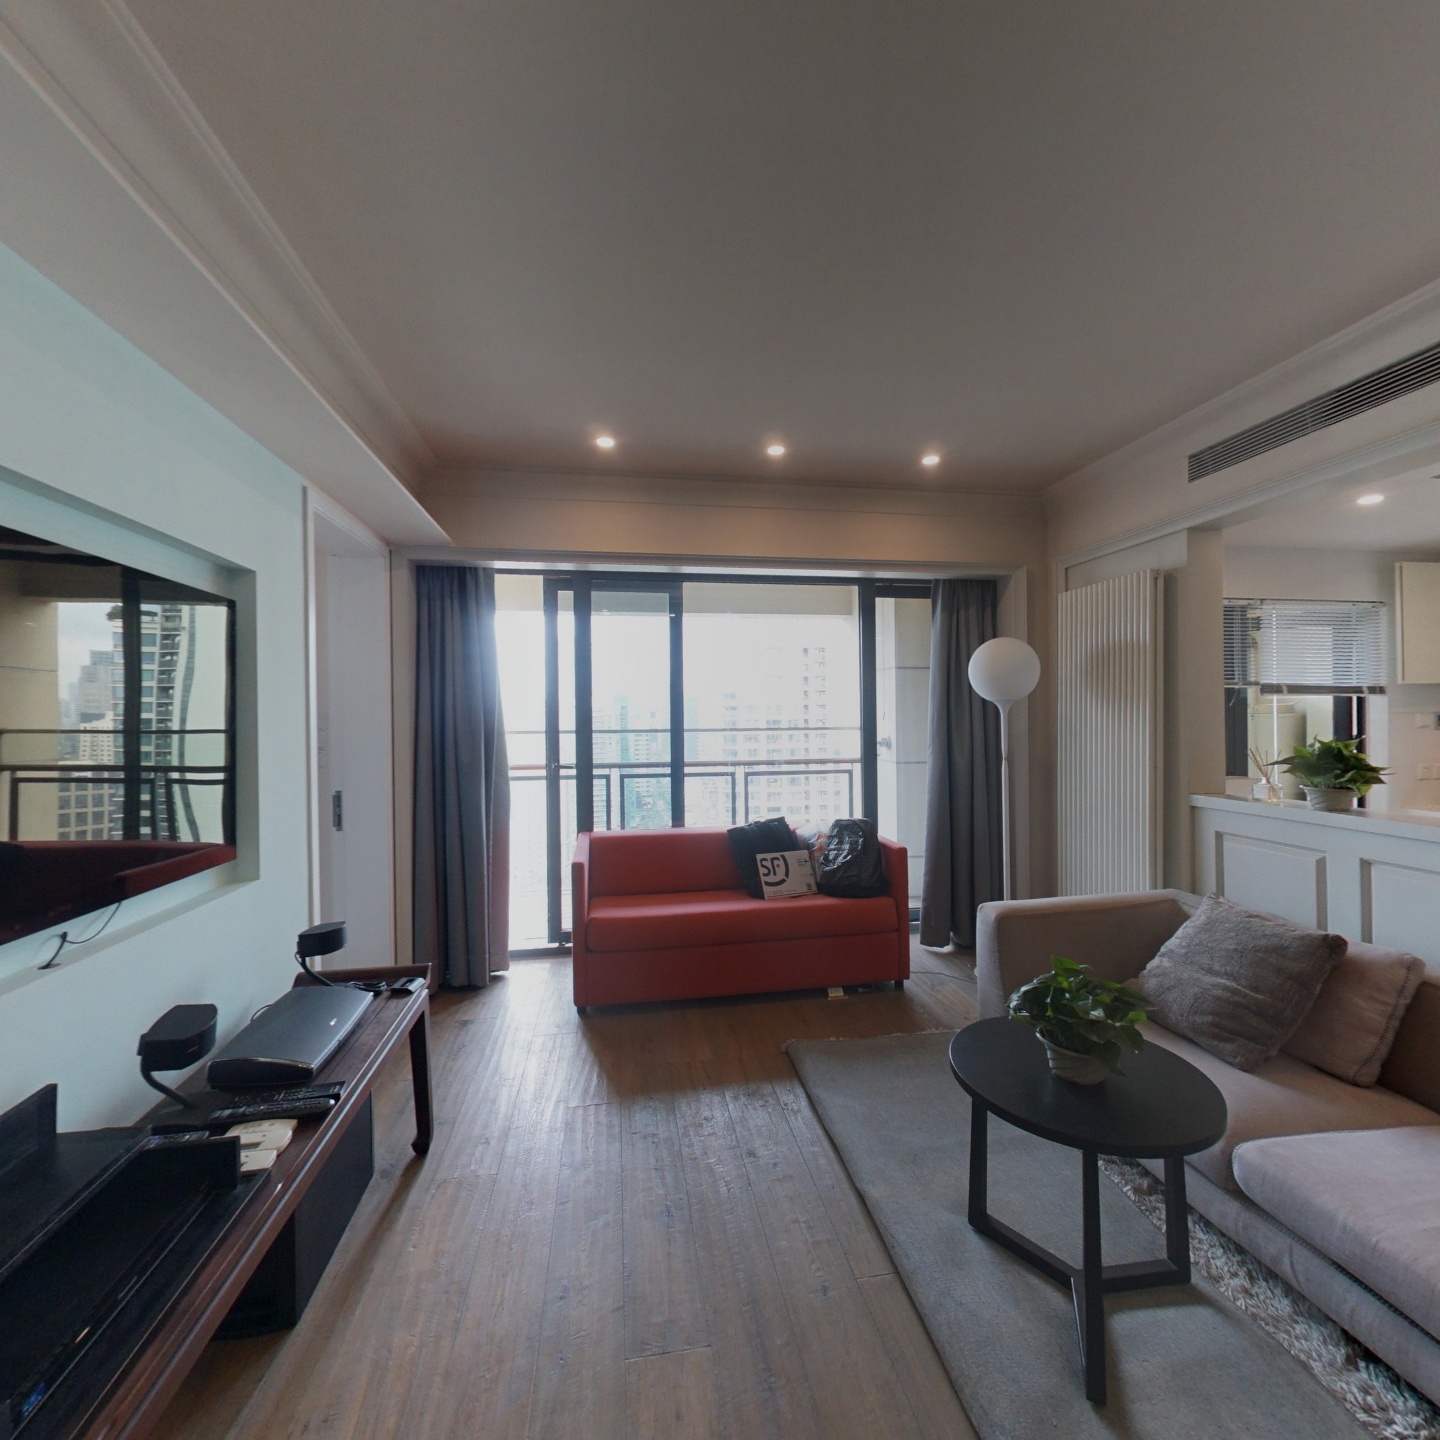 翠湖高区2房 台湾设计师执笔  打造top级居住体验